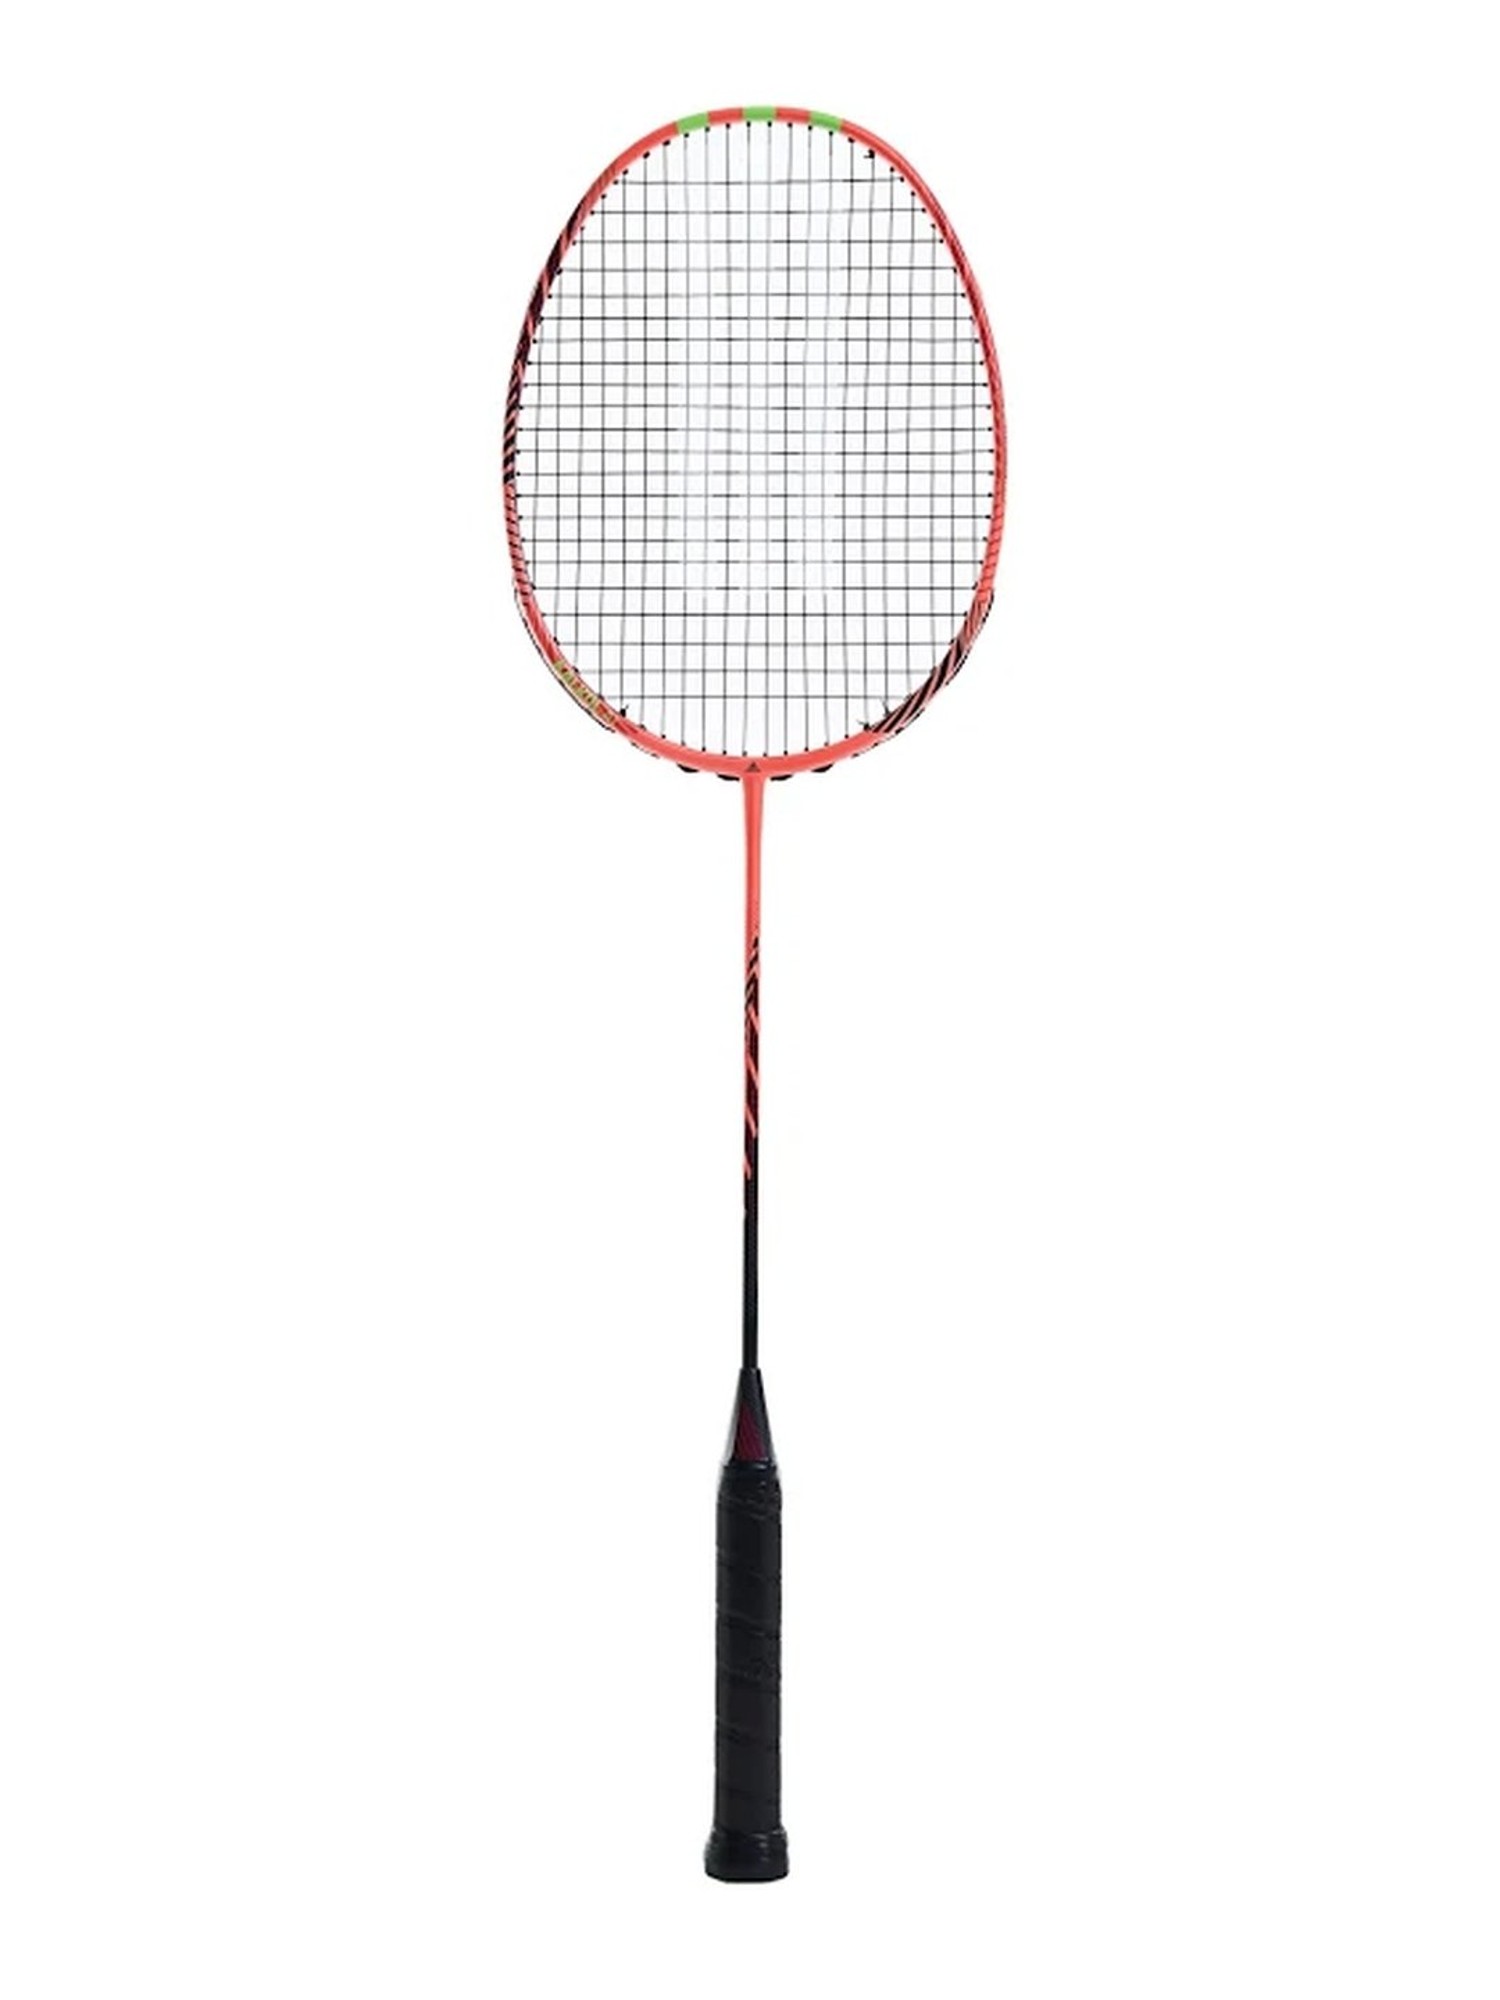 Adidas Kalkul A1 Solar Red Badminton Racquet (Size-G5)